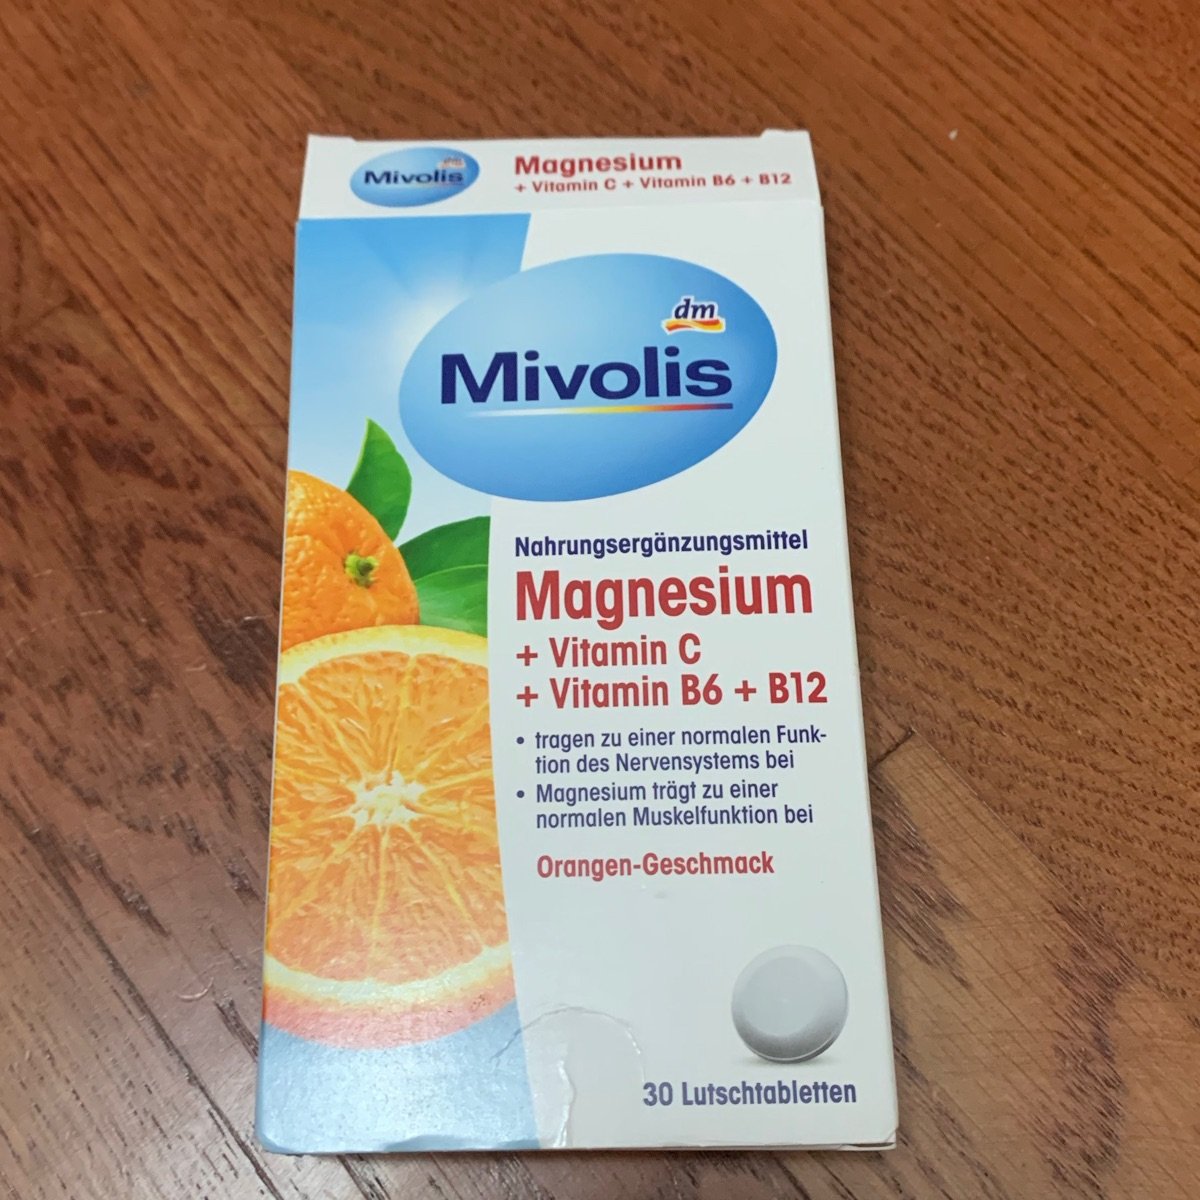 Mivolis Magnesium + Vitamin C + B6 + B12 Review